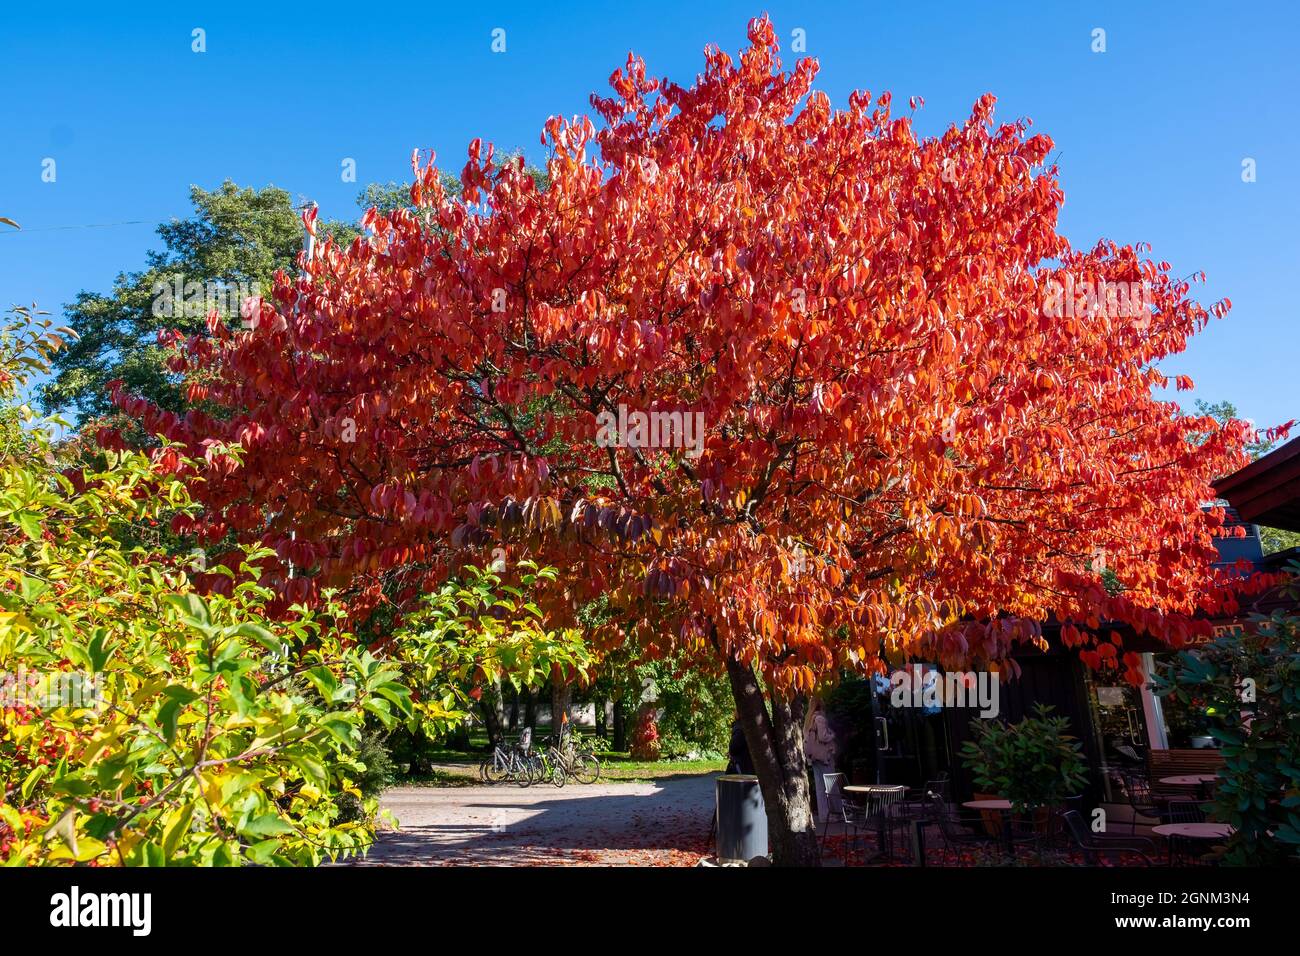 Helsinki / Finnland - 26. SEPTEMBER 2021: Ein schöner Baum in den Herbstfarben vor einem Café. Stockfoto